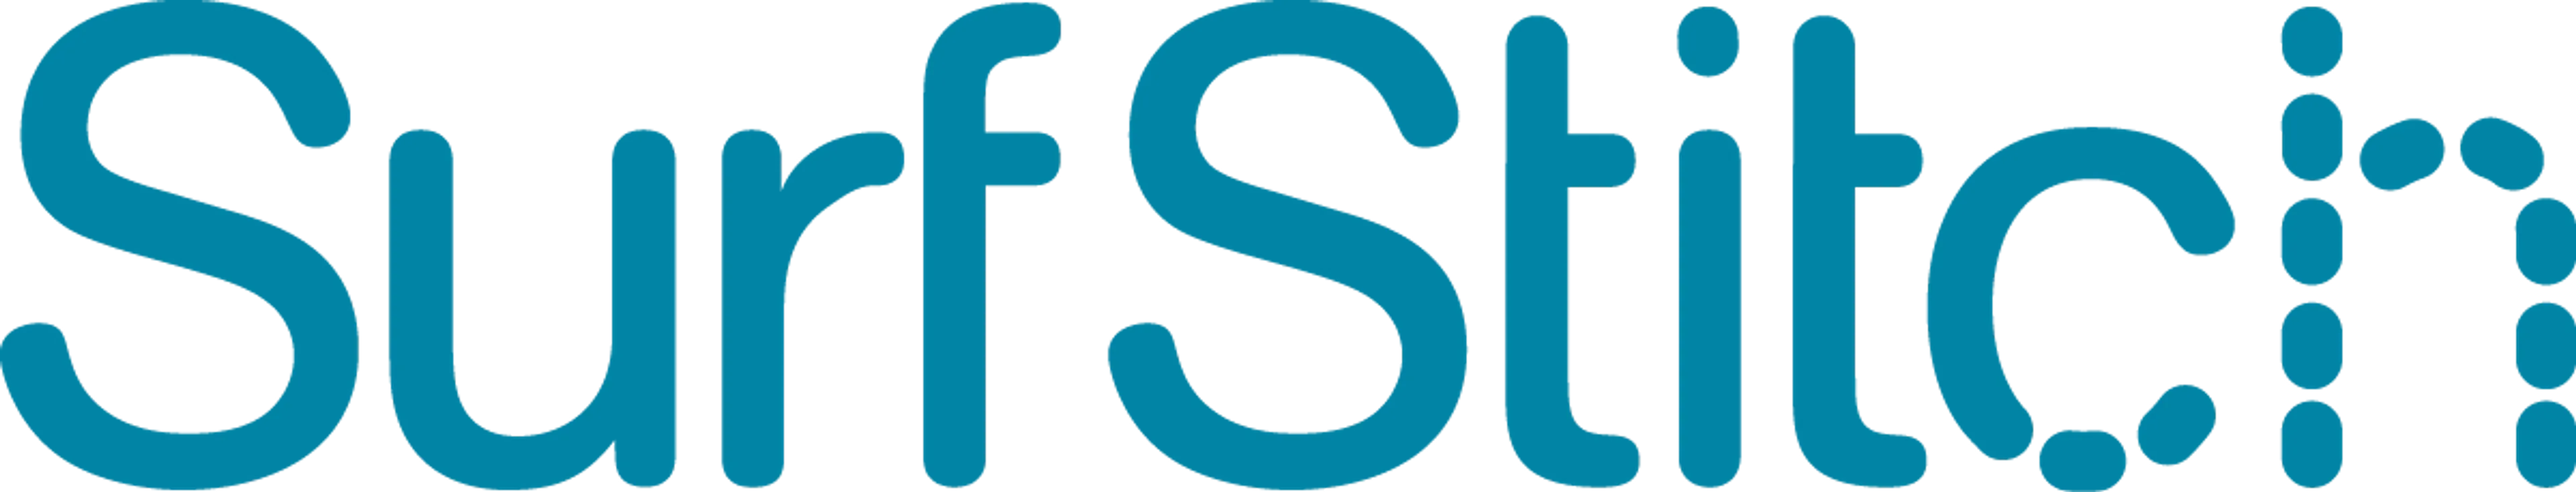 SURFSTITCH logo